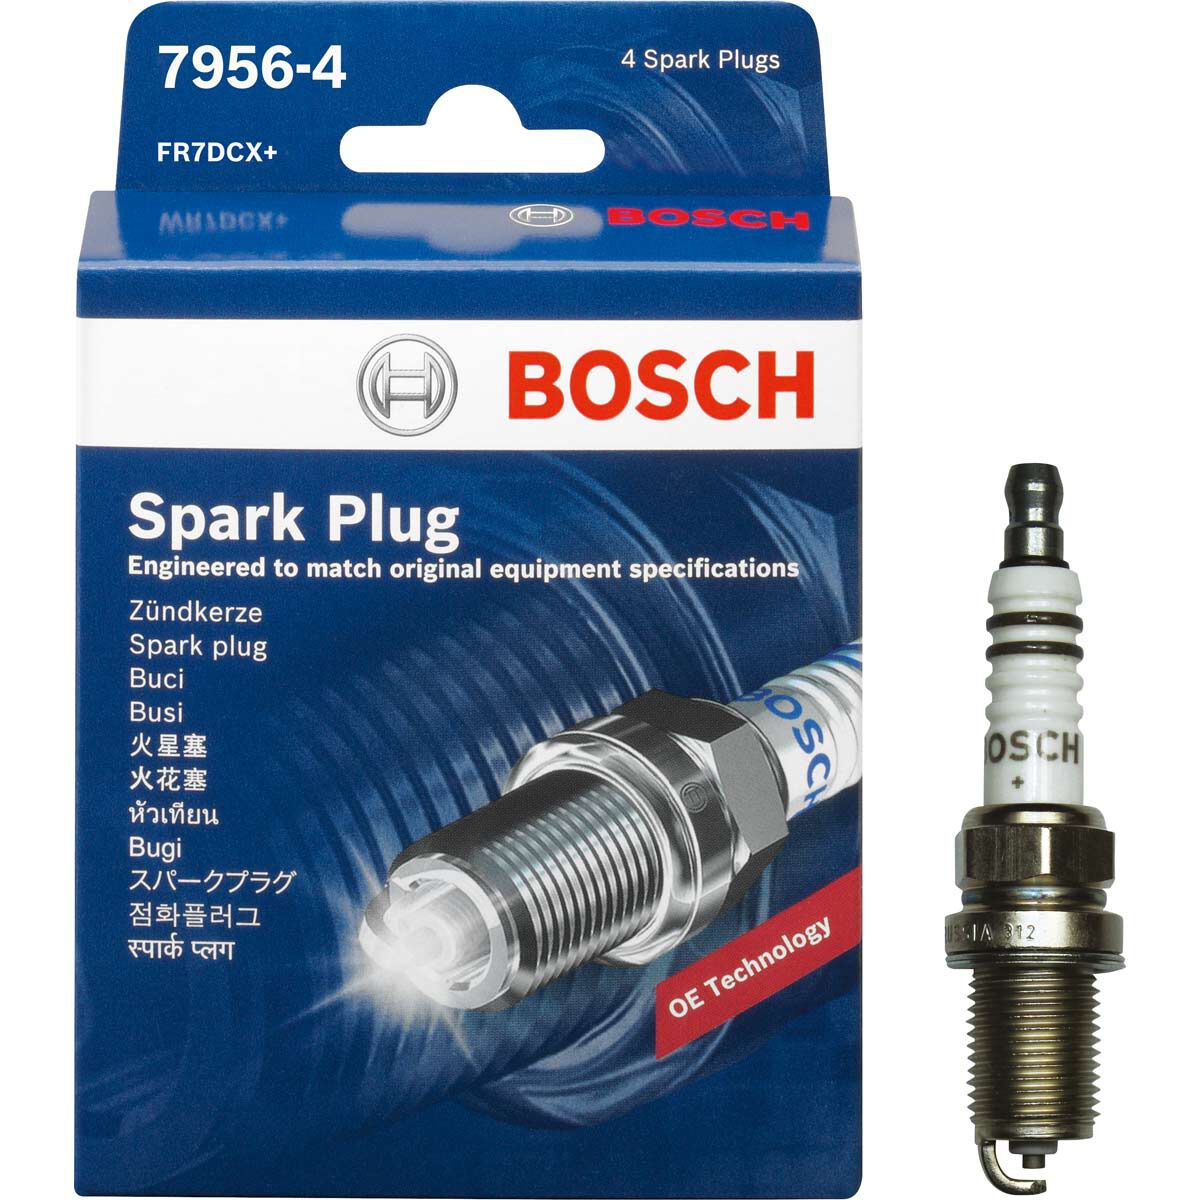 Bosch Spark Plug 7956-4 4 Pack | Supercheap Auto New Zealand